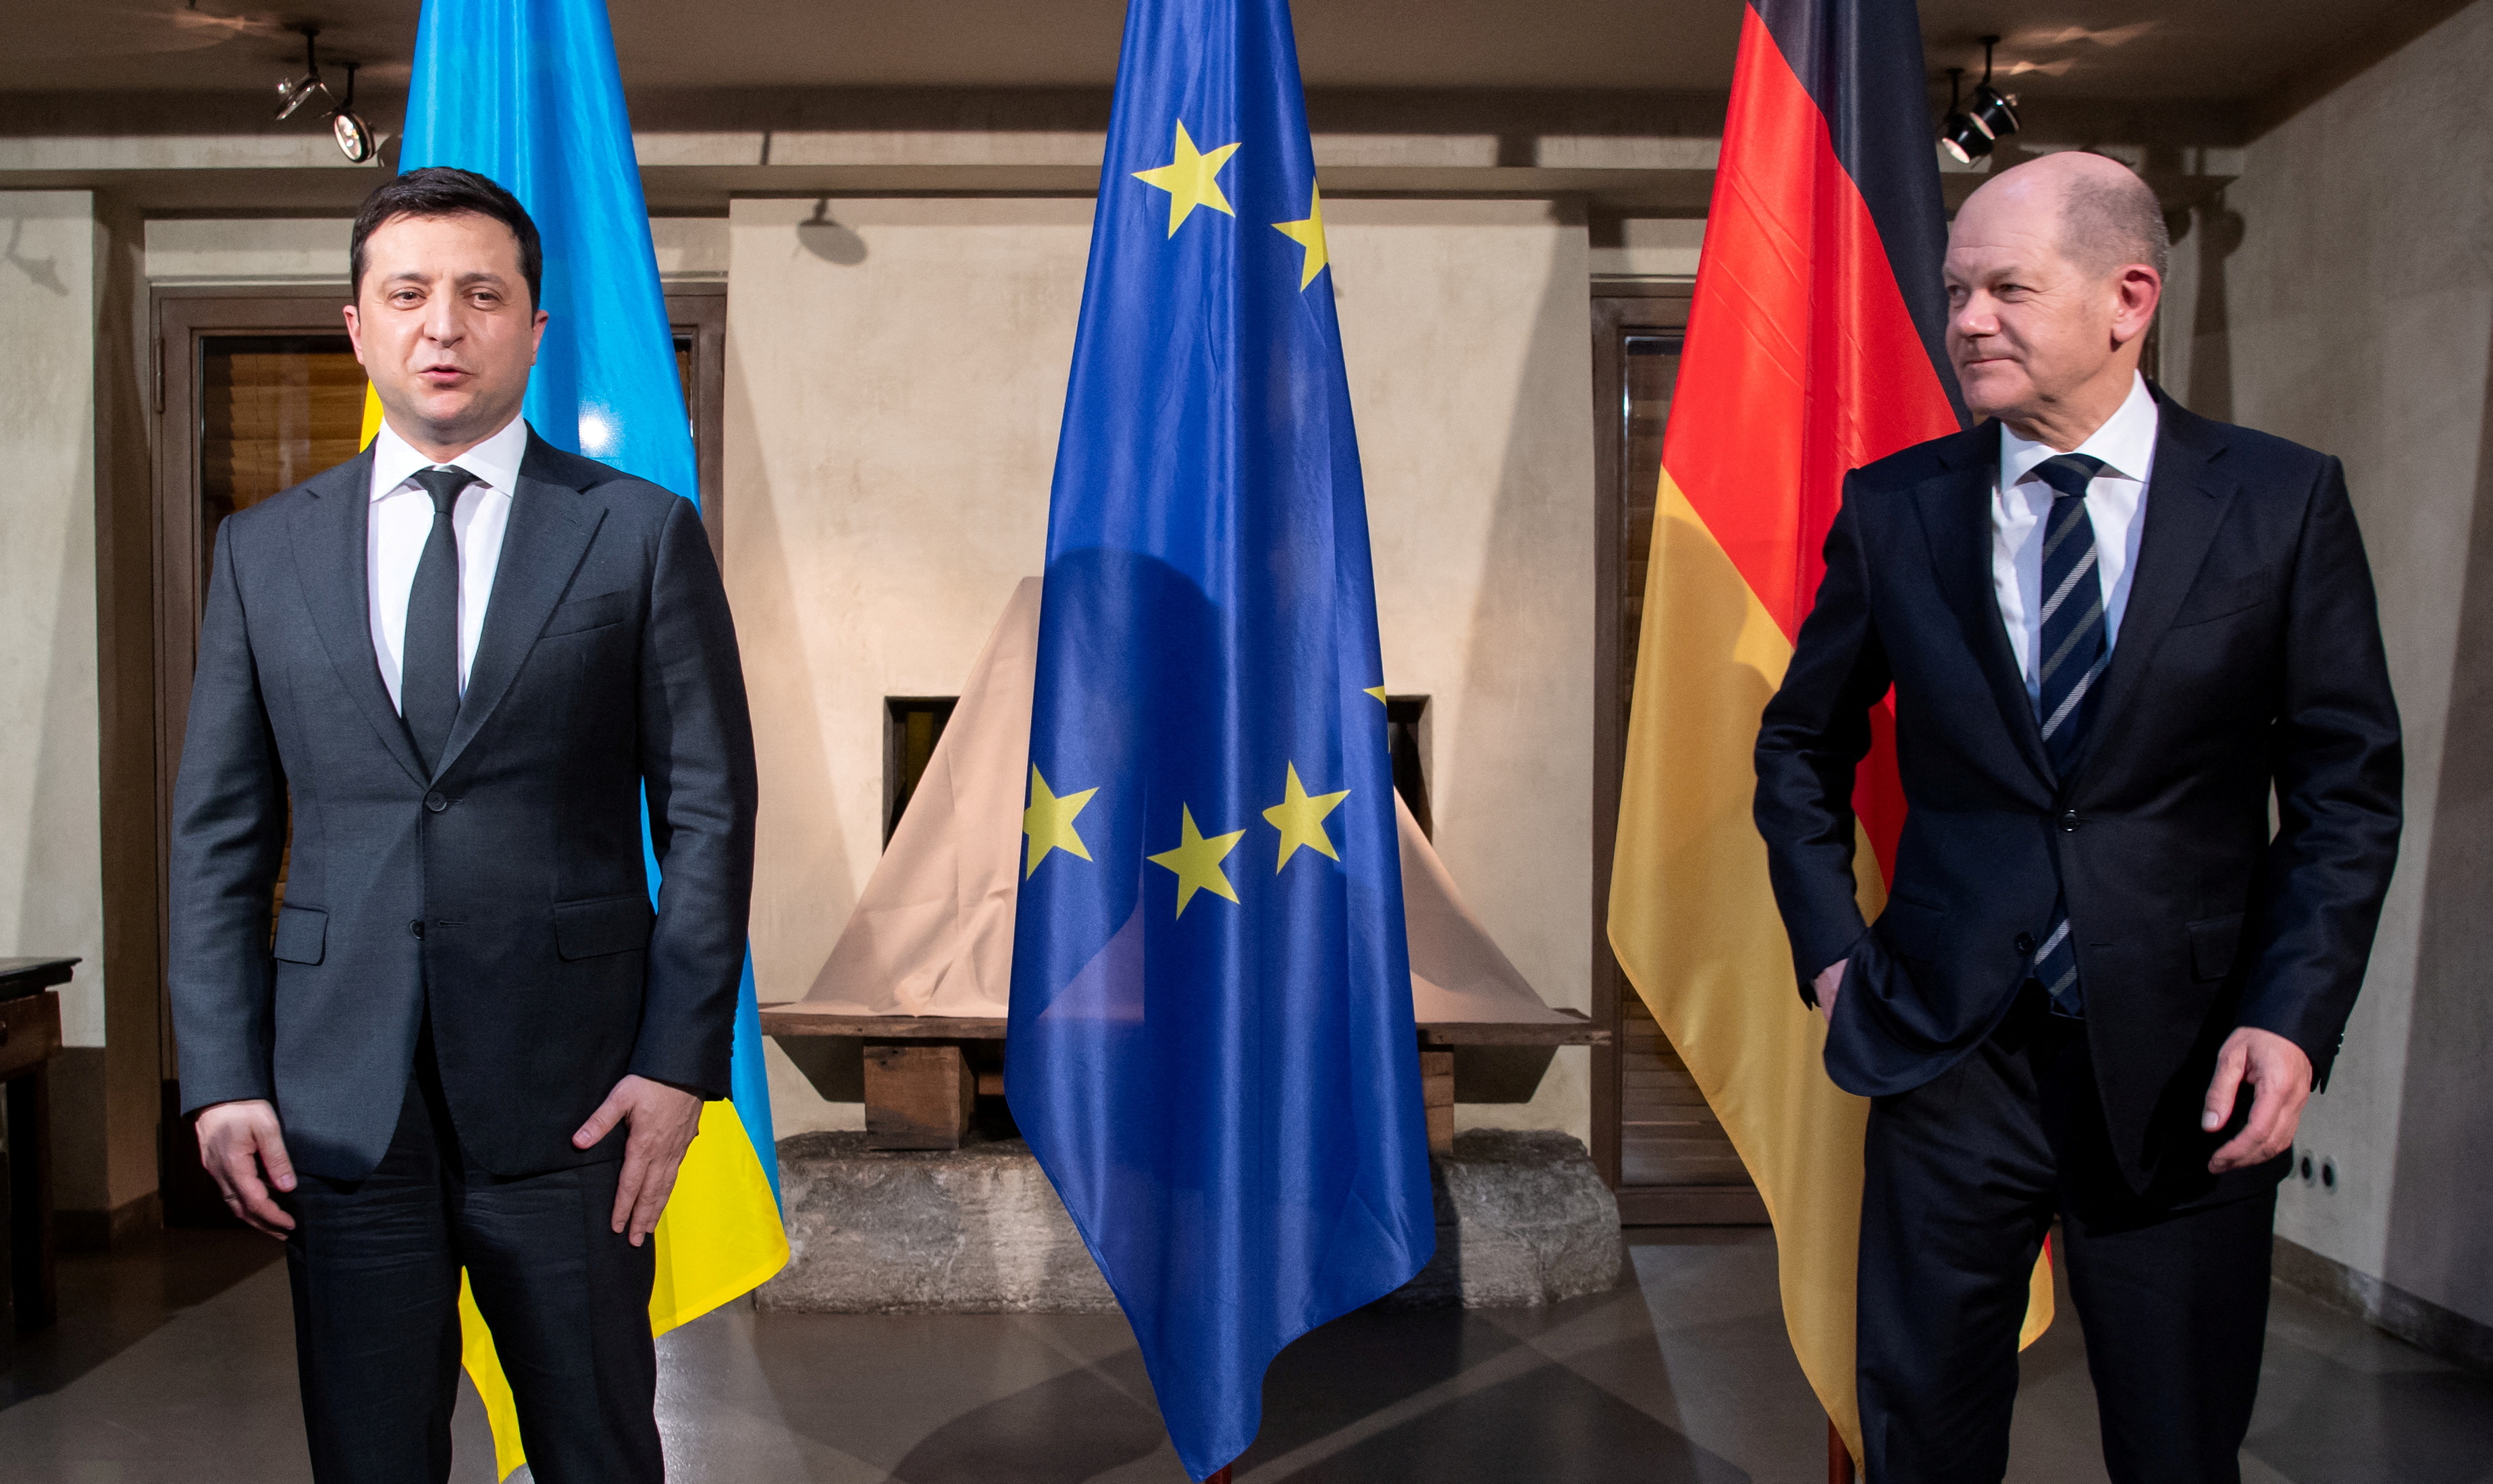 FOTO DE ARCHIVO: El canciller alemán, Olaf Scholz, se reúne con el presidente de Ucrania, Volodimir Zelensky, durante la Conferencia de Seguridad anual de Múnich, en Múnich, Alemania, el 19 de febrero de 2022. Sven Hoppe/Pool vía REUTERS